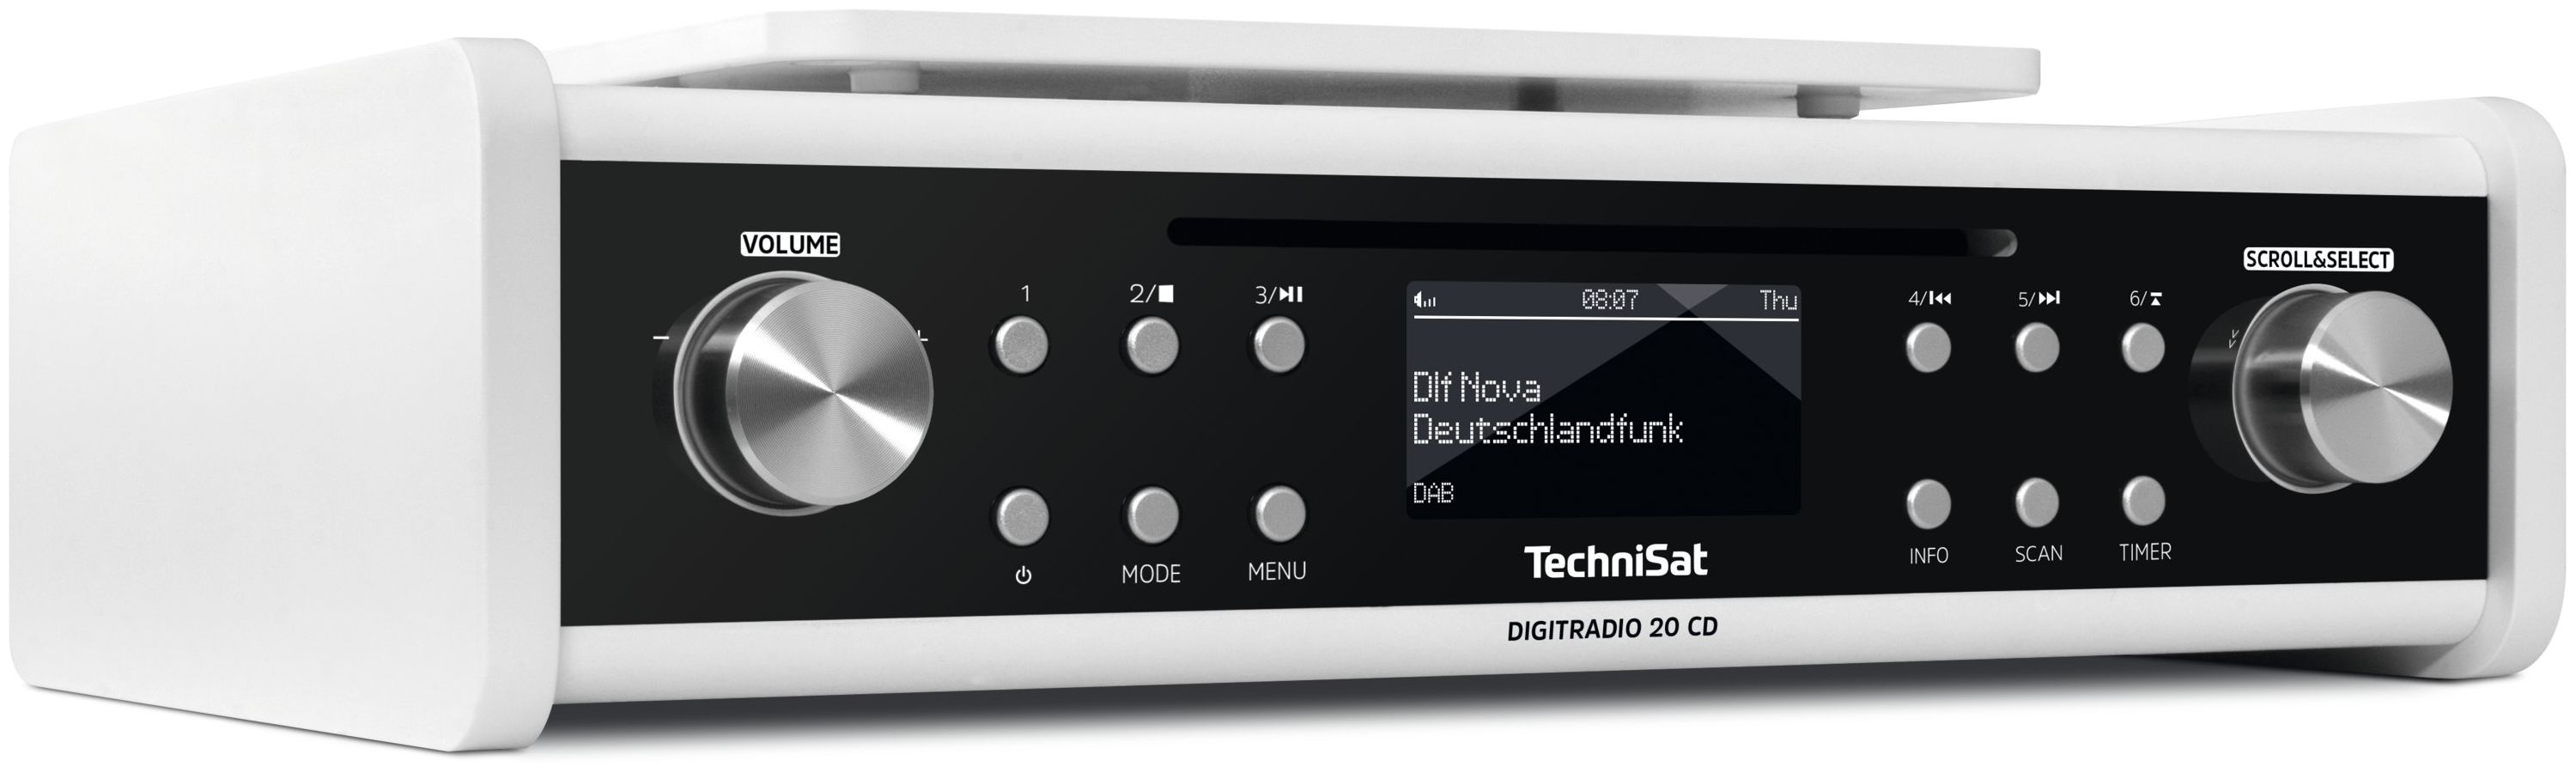 TechniSat DigitRadio 20CD DAB, DAB+, FM, UHF, UKW Persönlich Radio (Weiß)  von expert Technomarkt